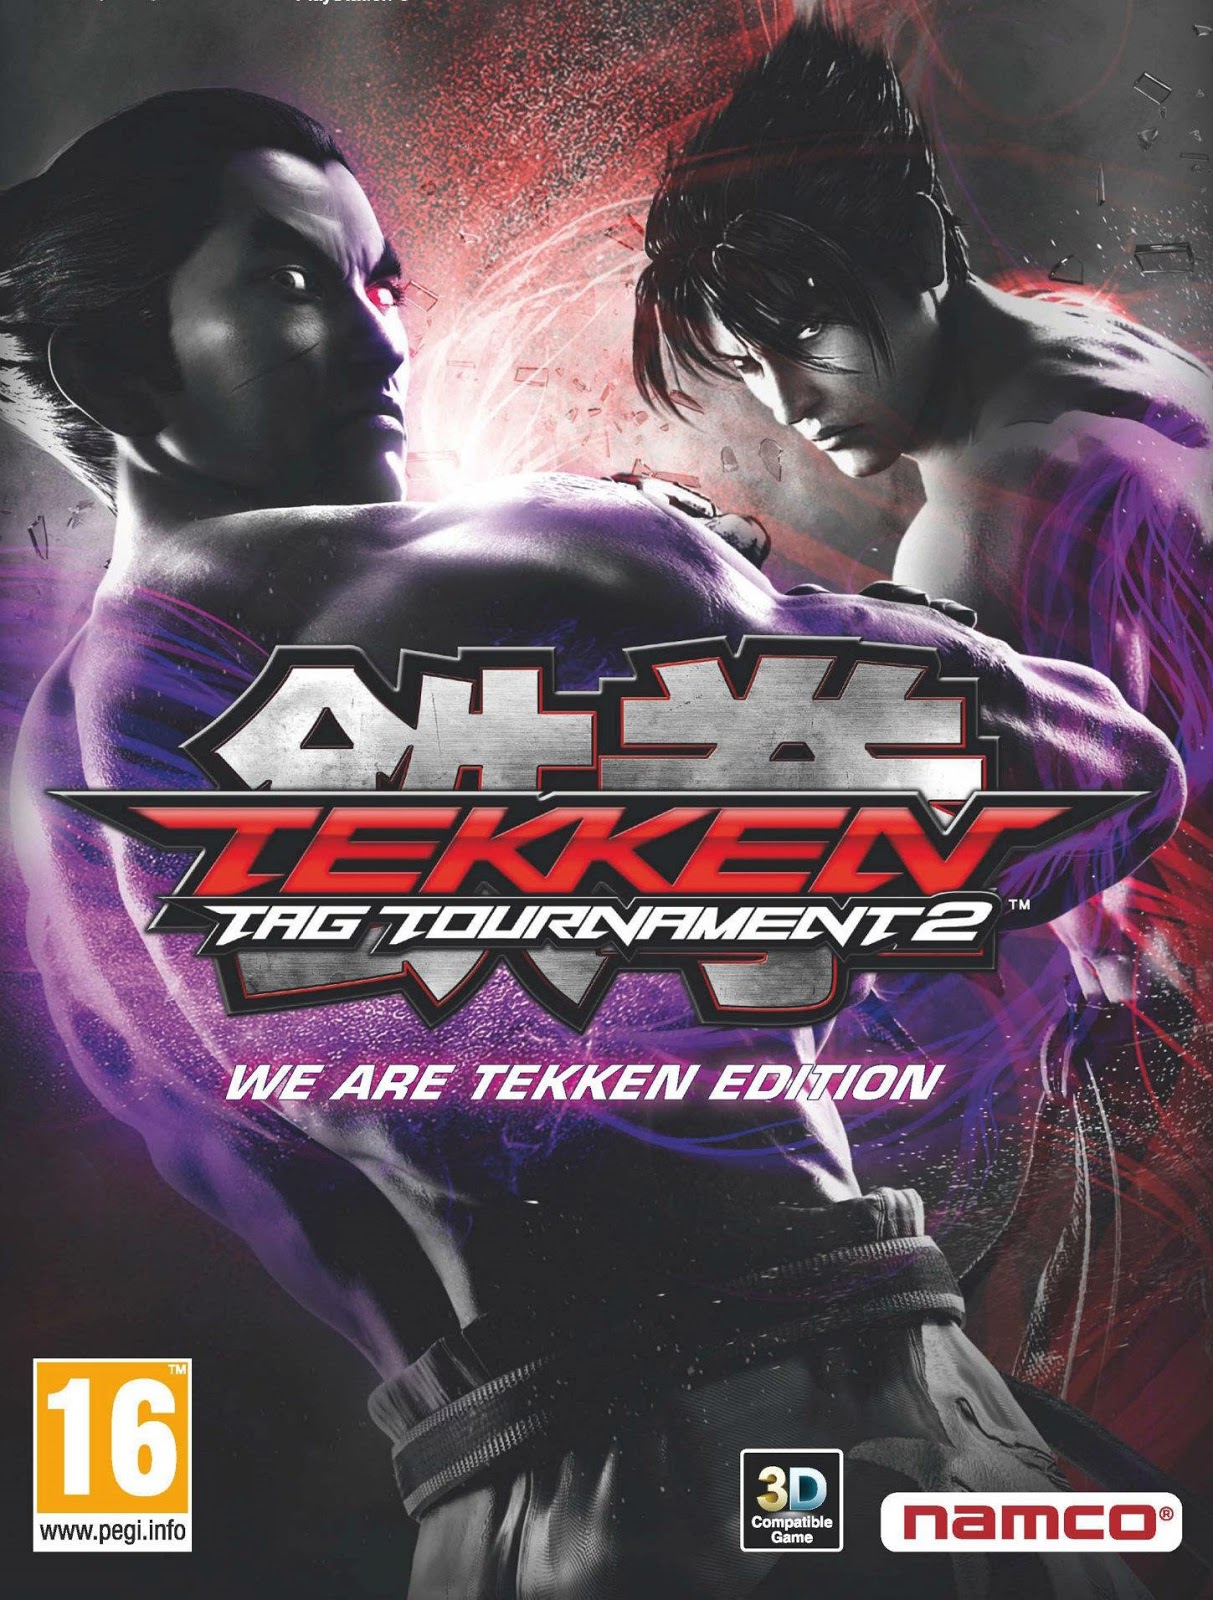 Tekken Tag Tournament 2 Game Full Version Free Download ...